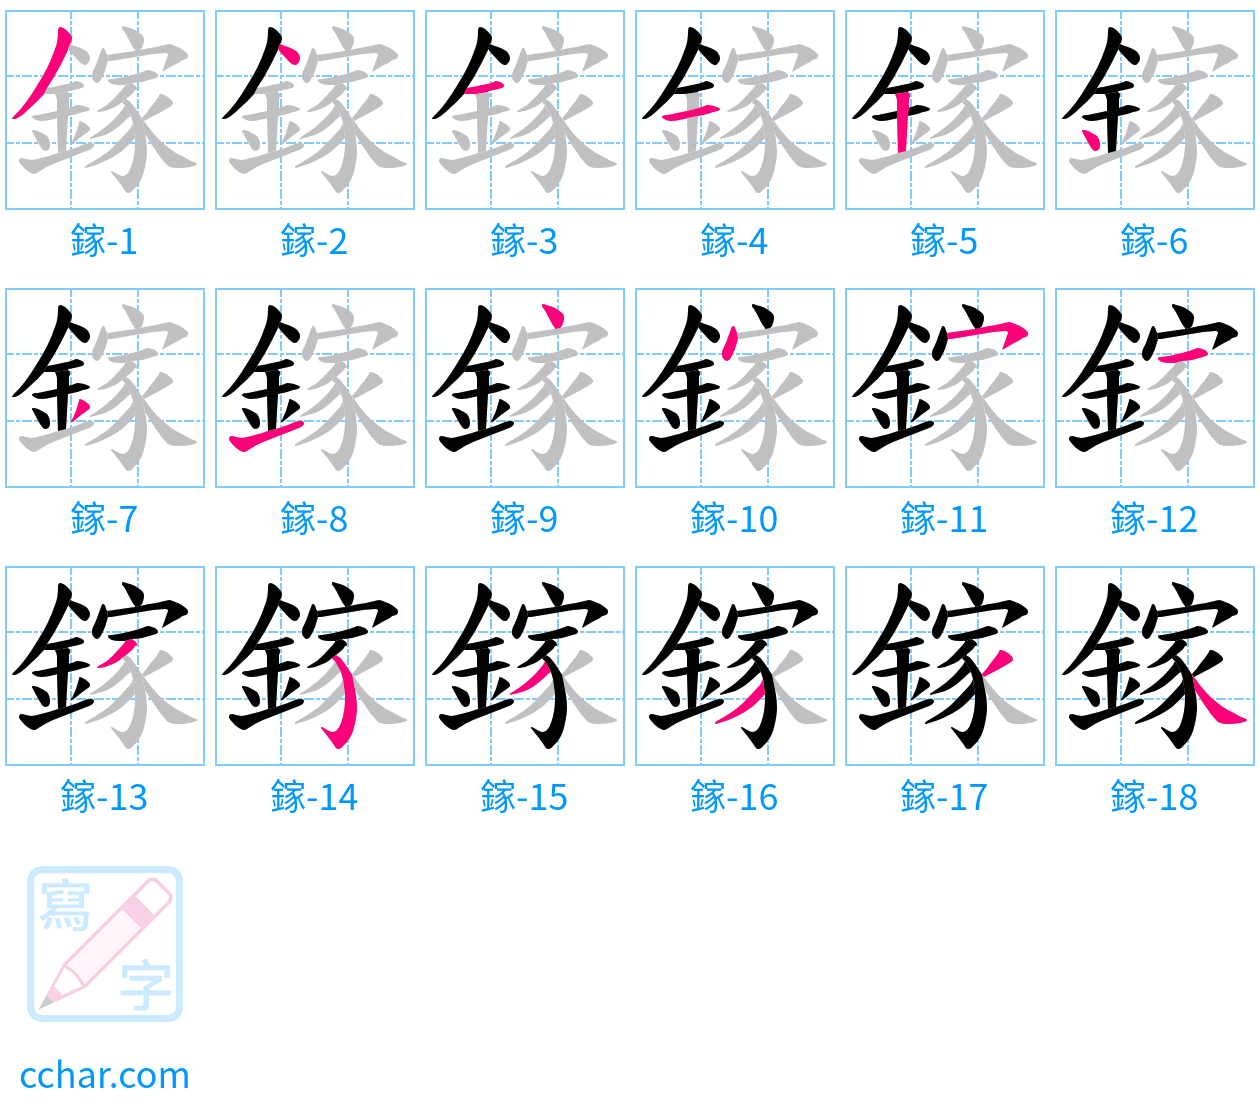 鎵 stroke order step-by-step diagram